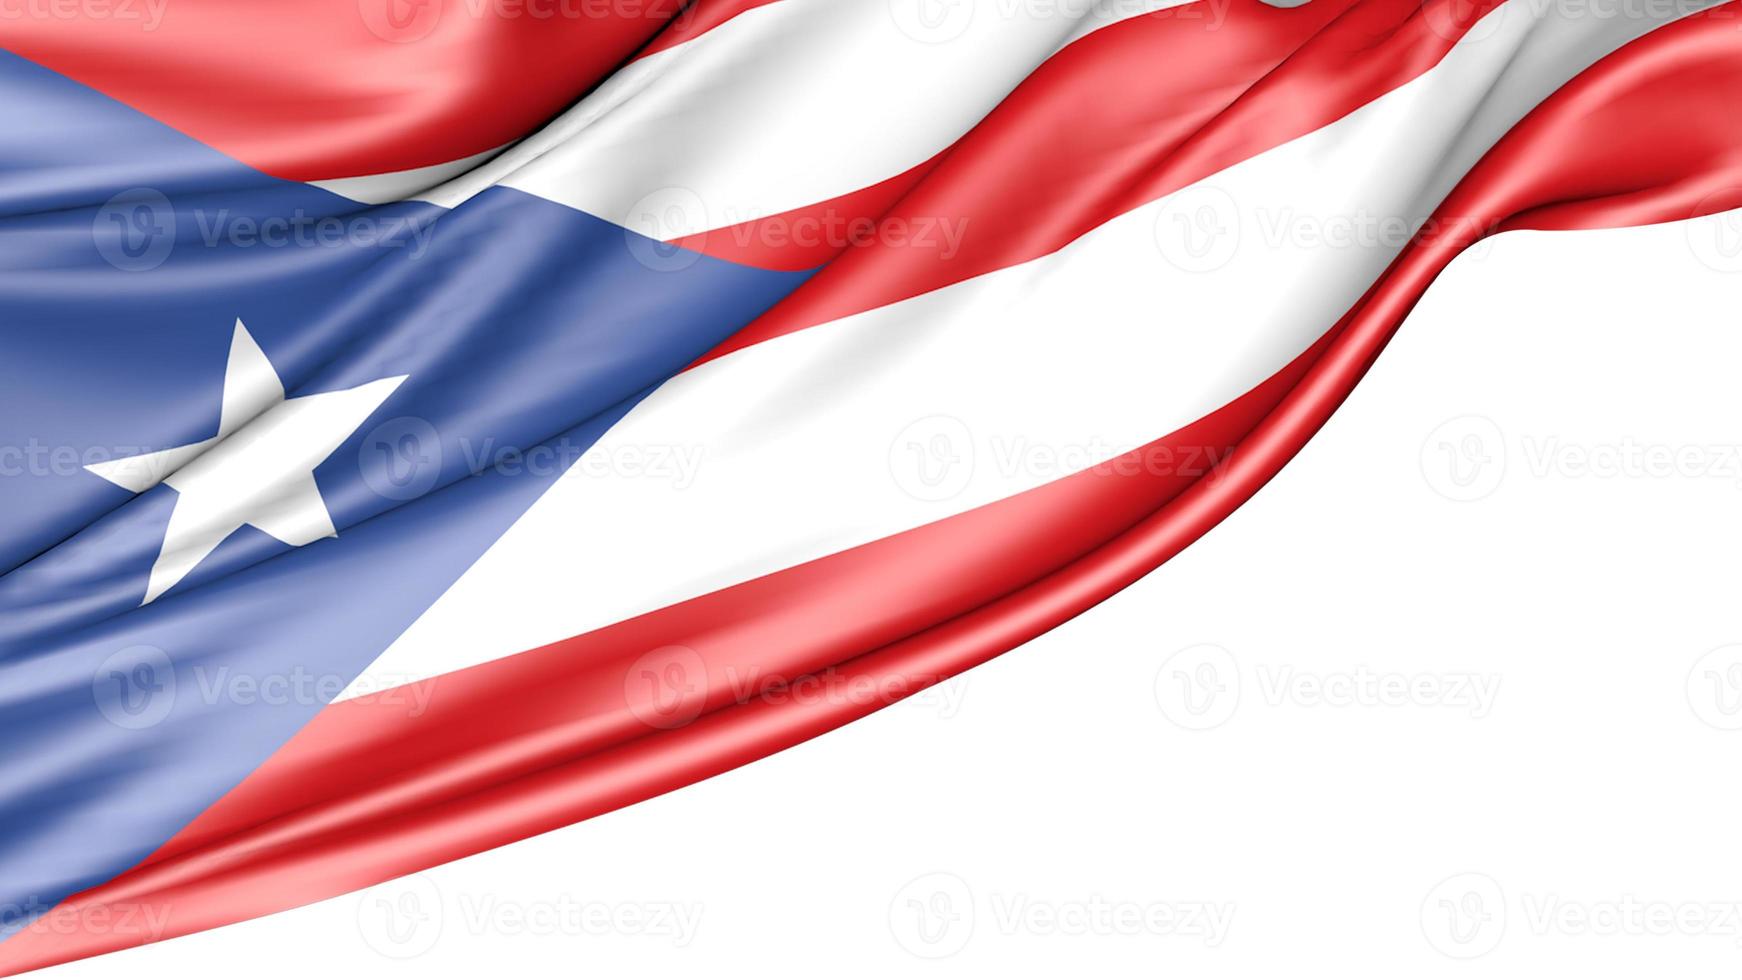 Puerto Rico Flag Isolated on White Background, 3D Illustration photo